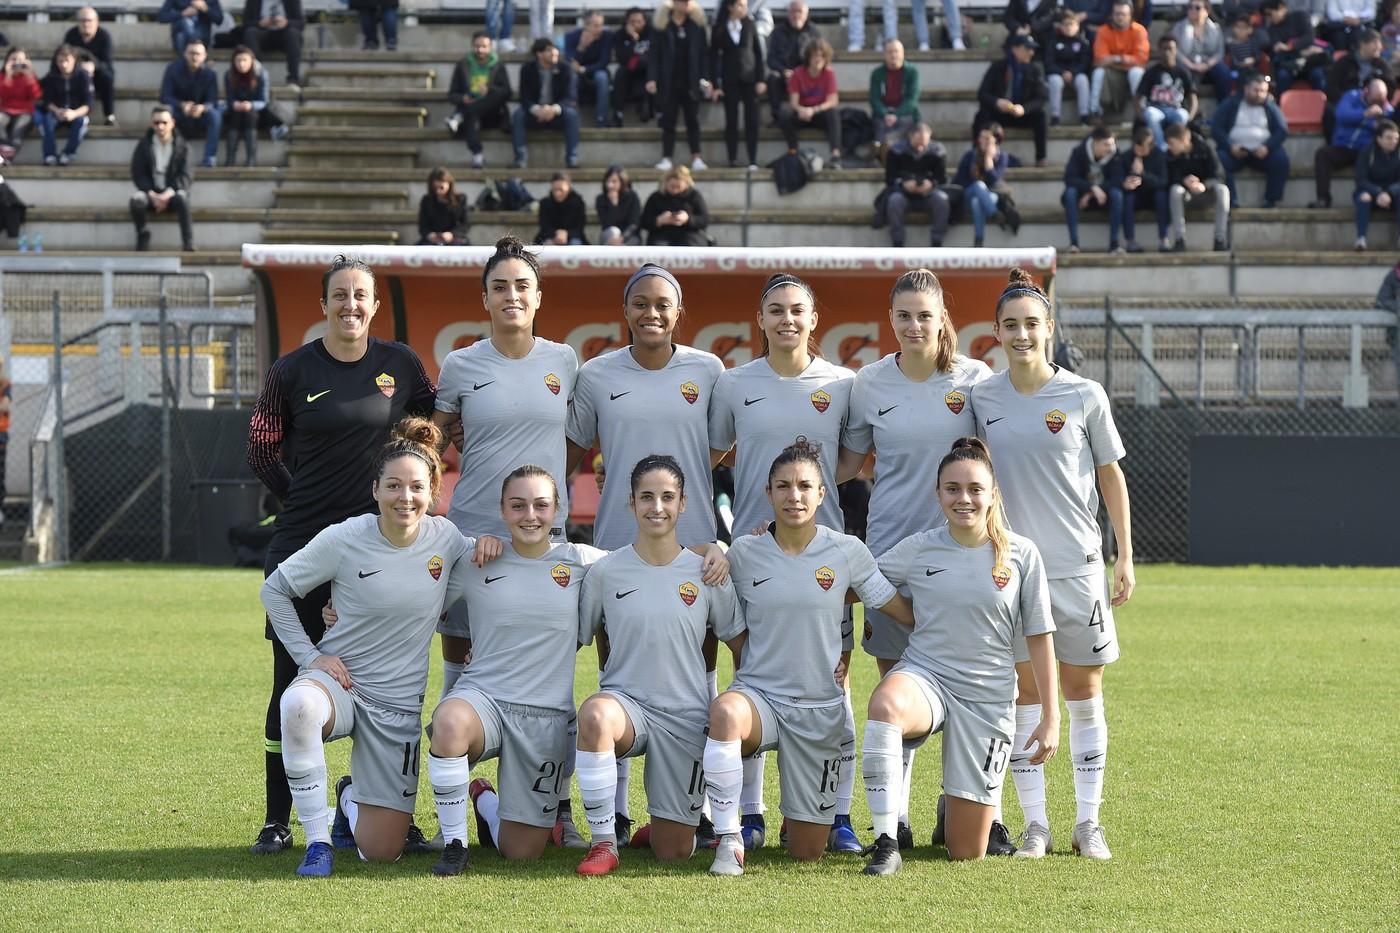 La Roma Femminile domina a Tavagnacco: 5-0 con una super Ciccotti©LaPresse